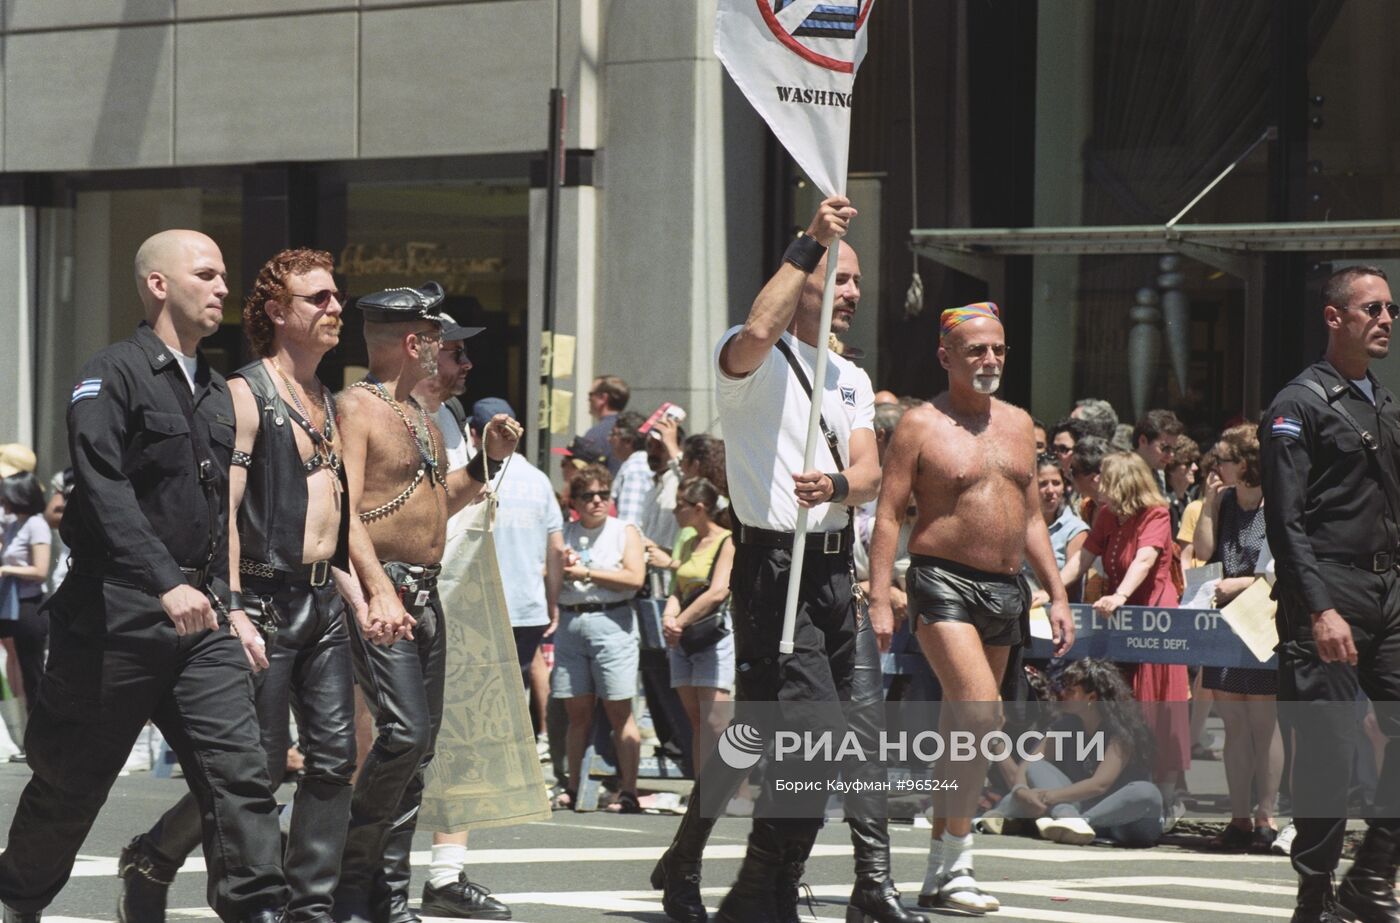 Парад геев и лесбиянок в Нью-Йорке